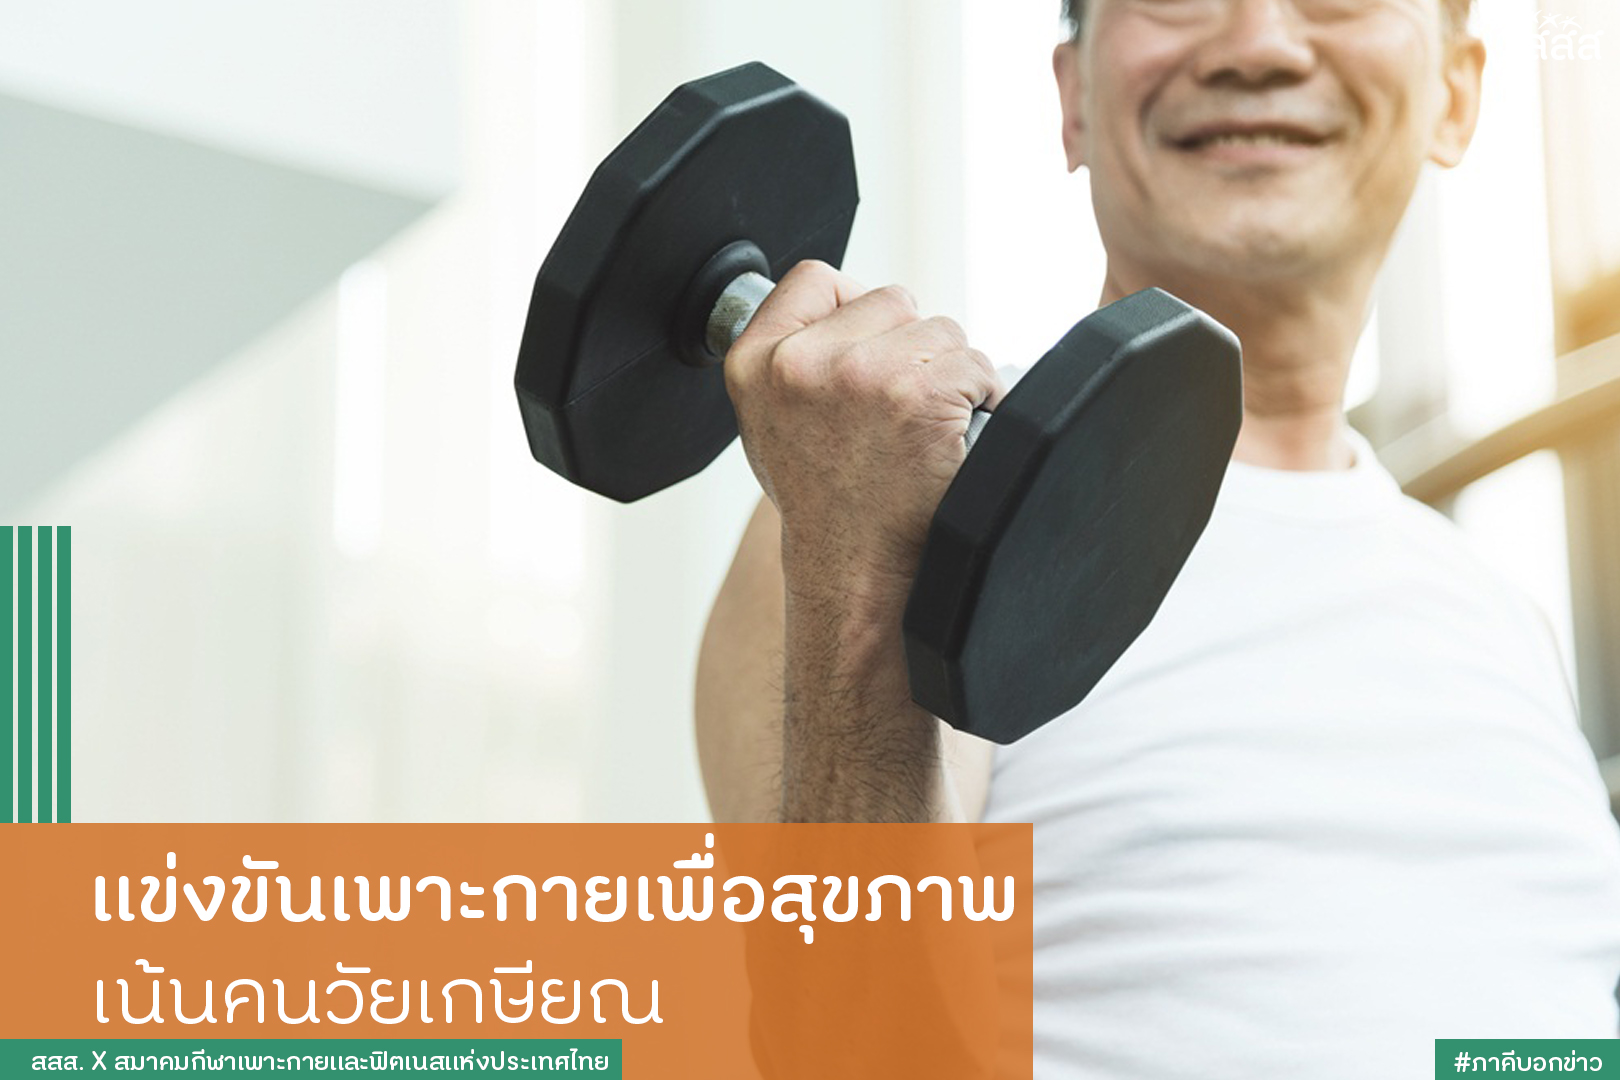 แข่งขันเพาะกายเพื่อสุขภาพ เน้นคนวัยเกษียณ thaihealth